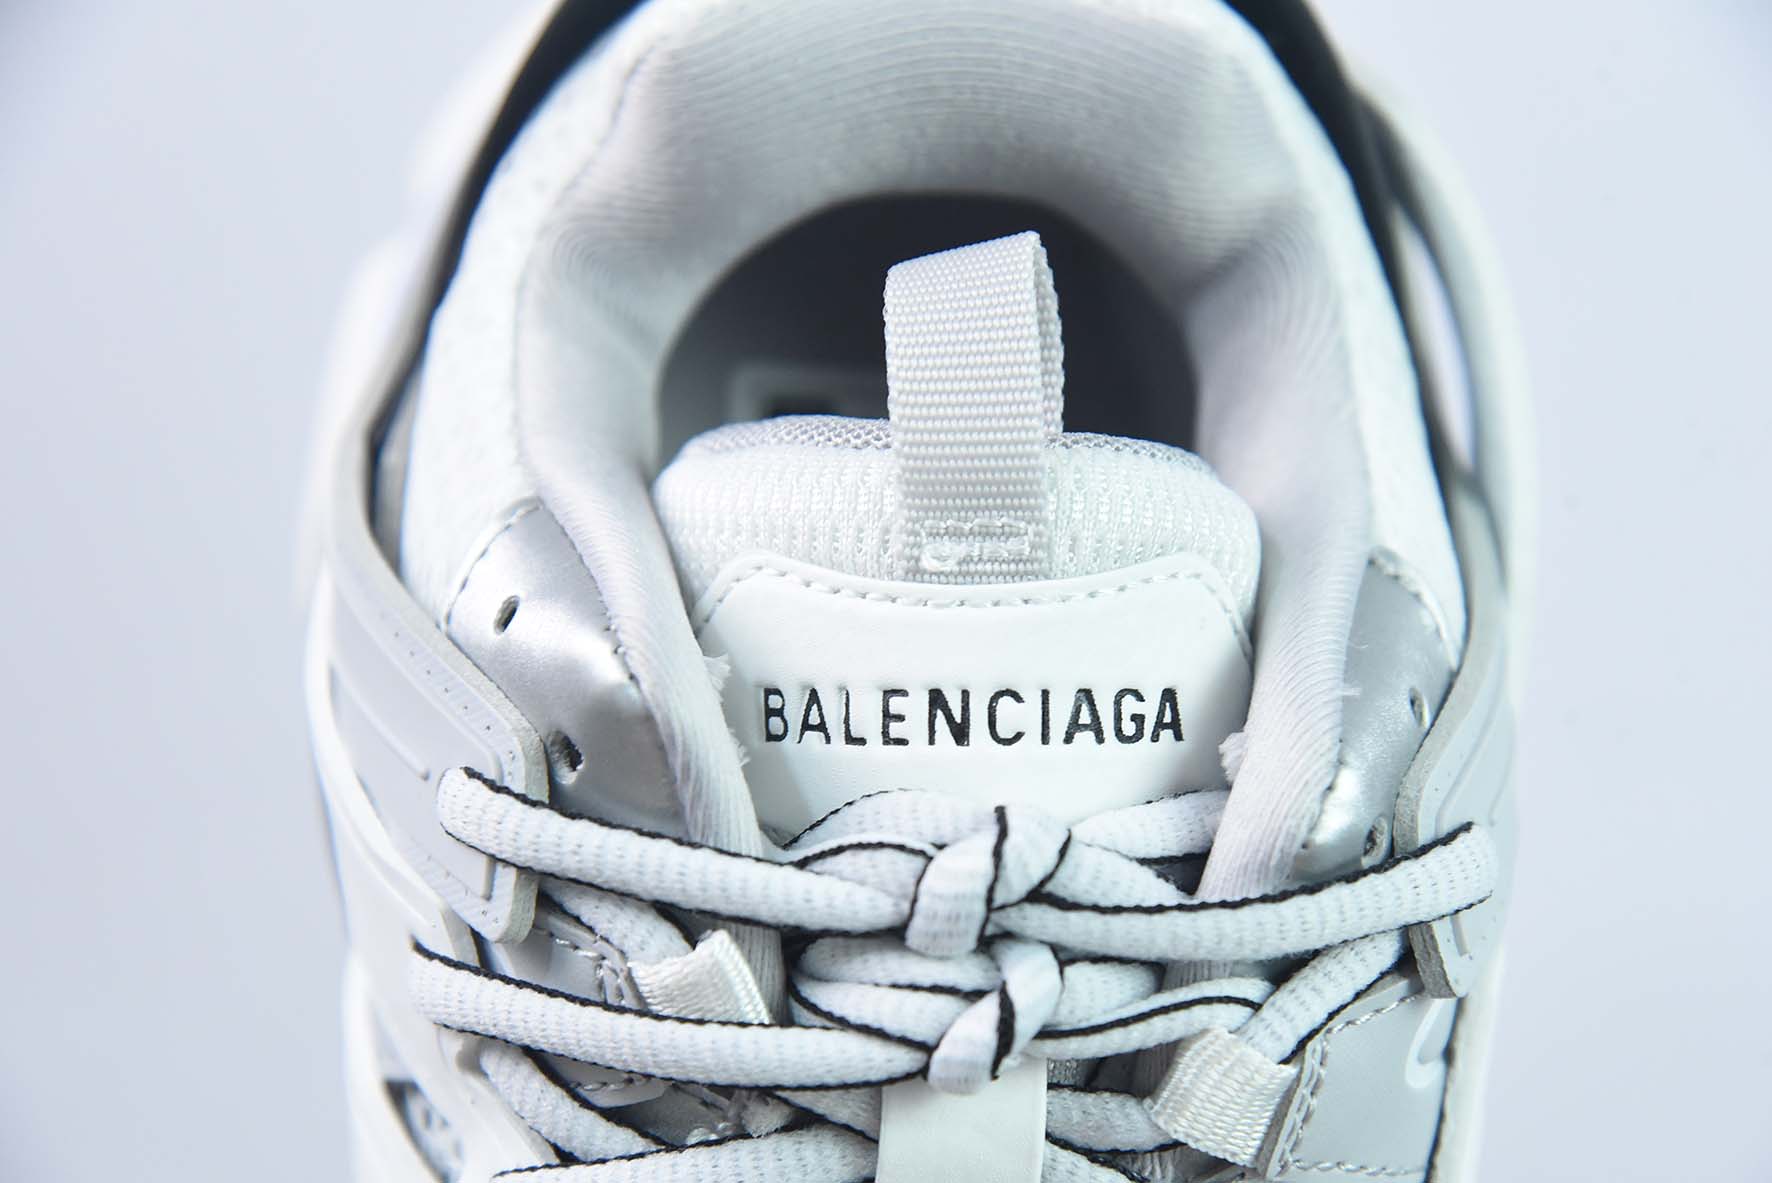 巴黎世家/Balenciaga 巴黎世家3.0低帮老爹鞋 3.0带灯白黑灰